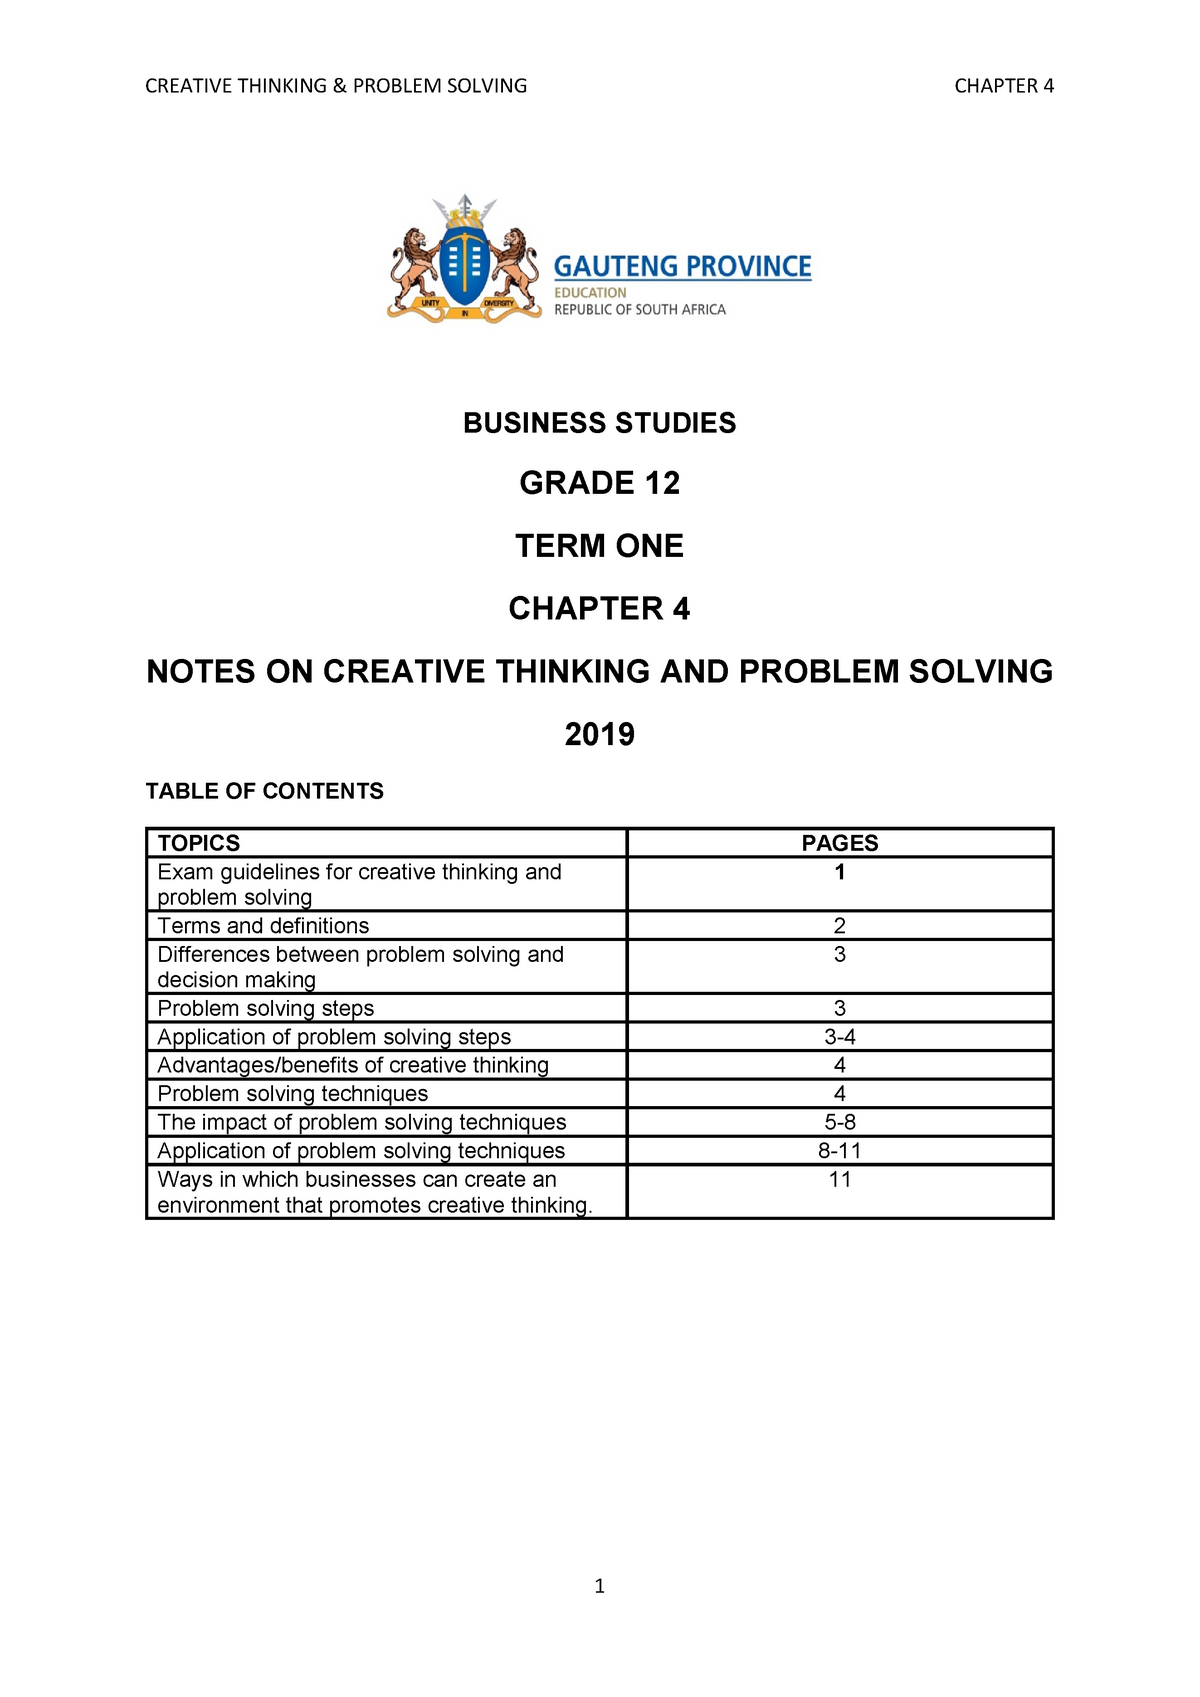 creative thinking essay grade 12